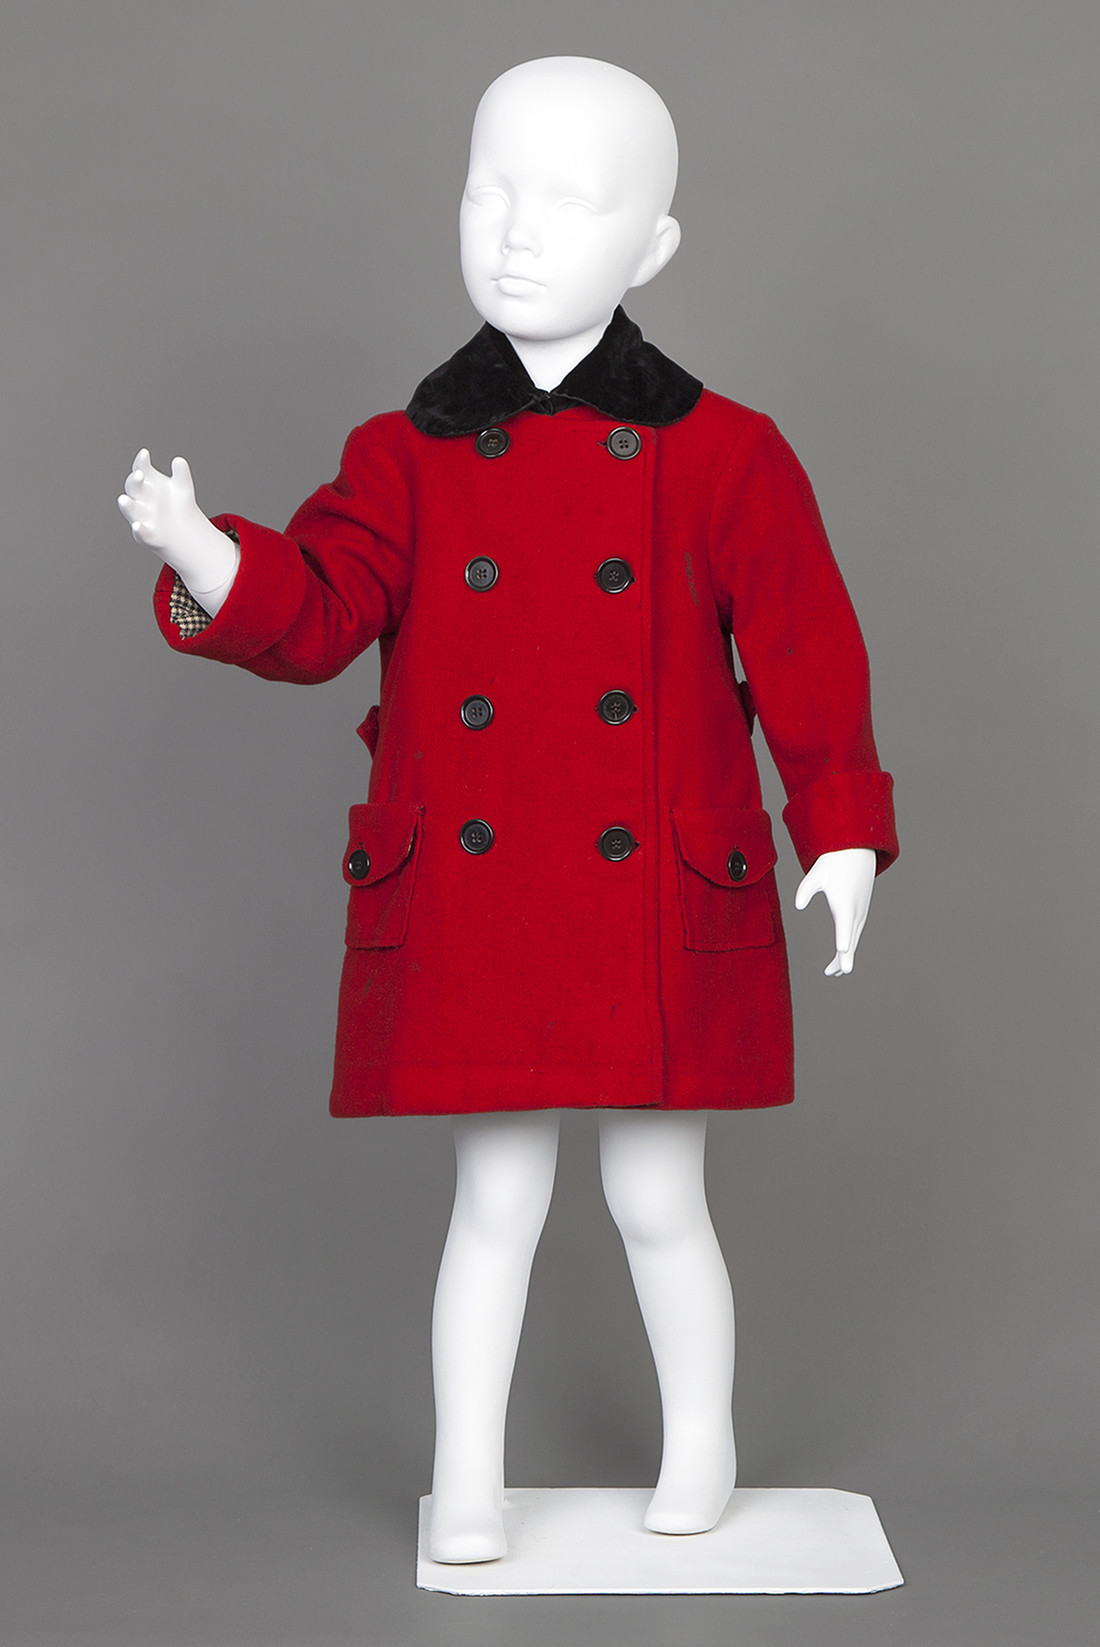 Child's red coat